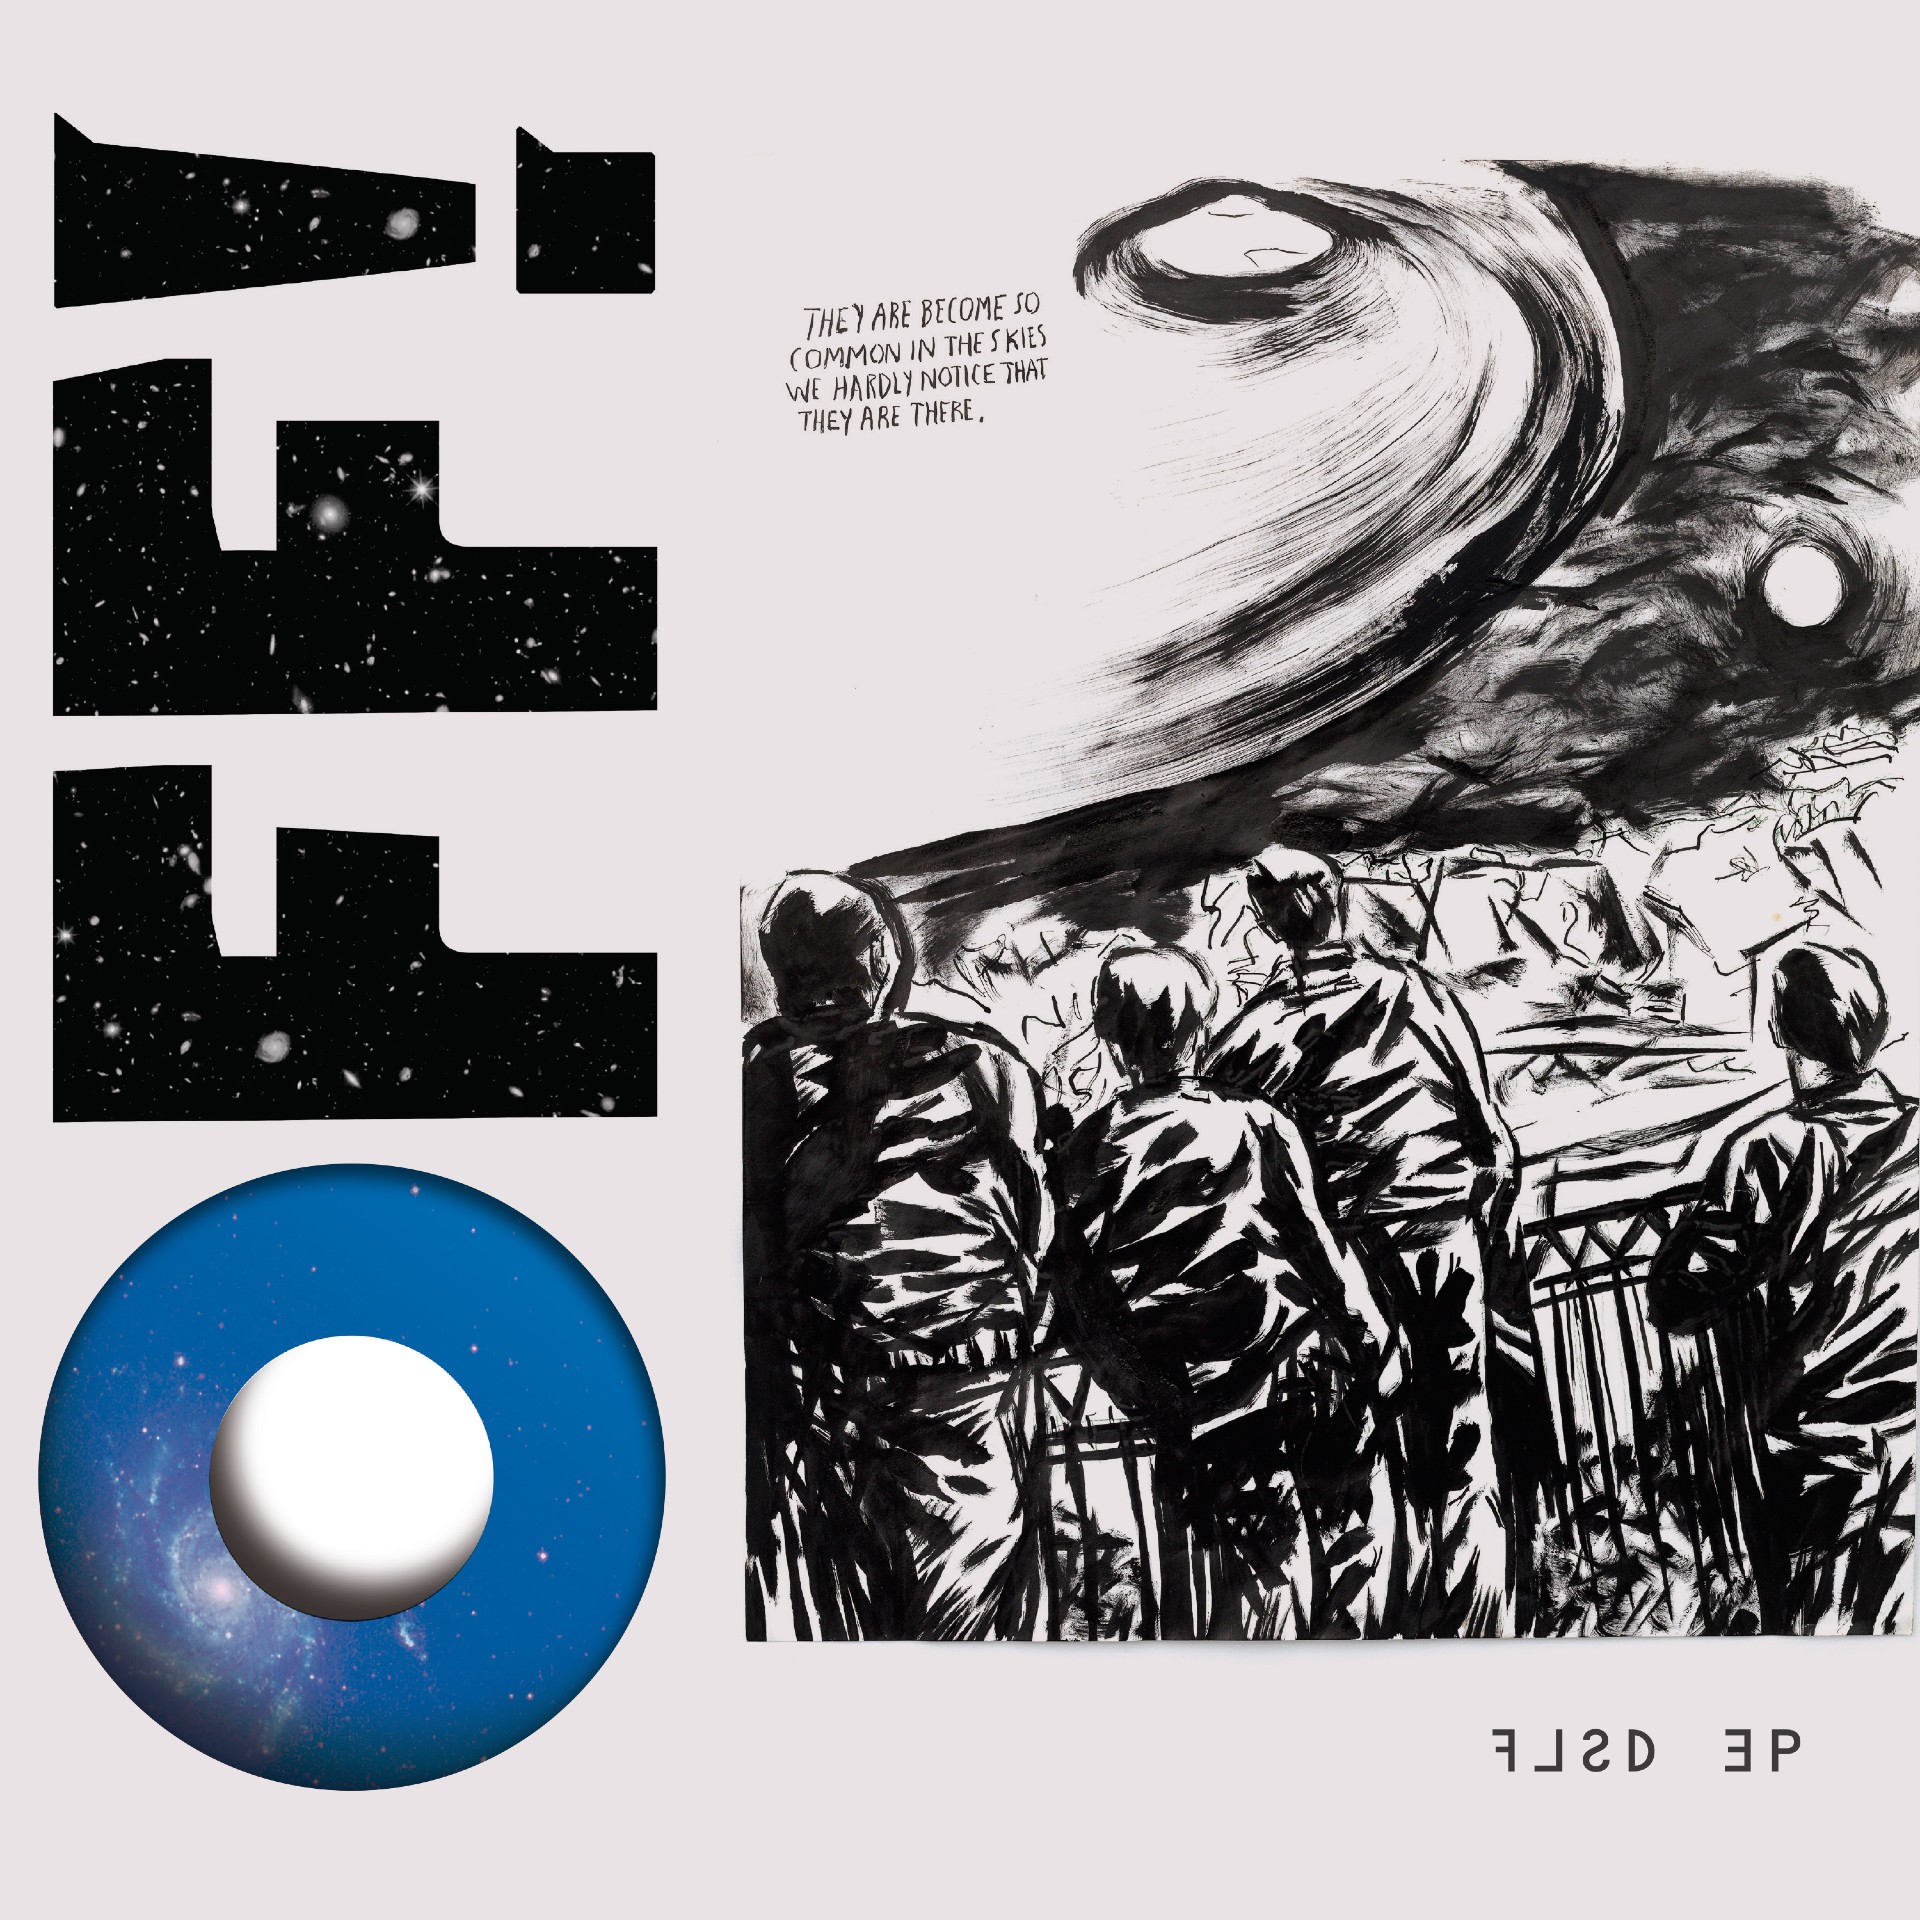 OFF! ‘FLSD’ EP album artwork